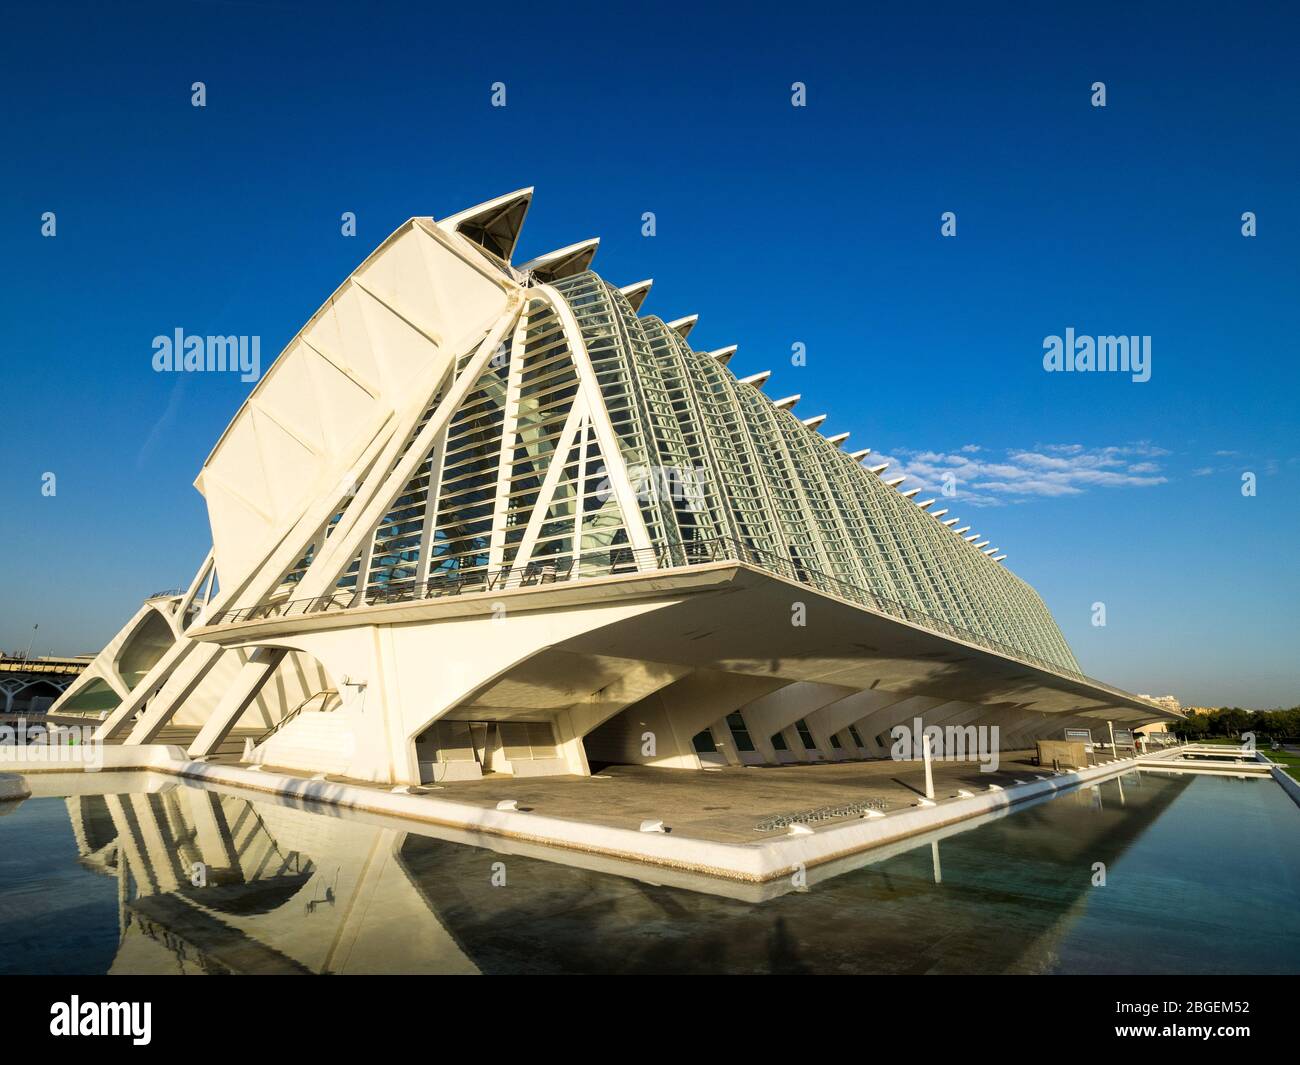 Valencia architettura - Museo della Scienza di Príncipe Felipe nella Città delle Arti e delle Scienze di Valencia, architetto Santiago Calatrava (aperto nel 2000) Foto Stock